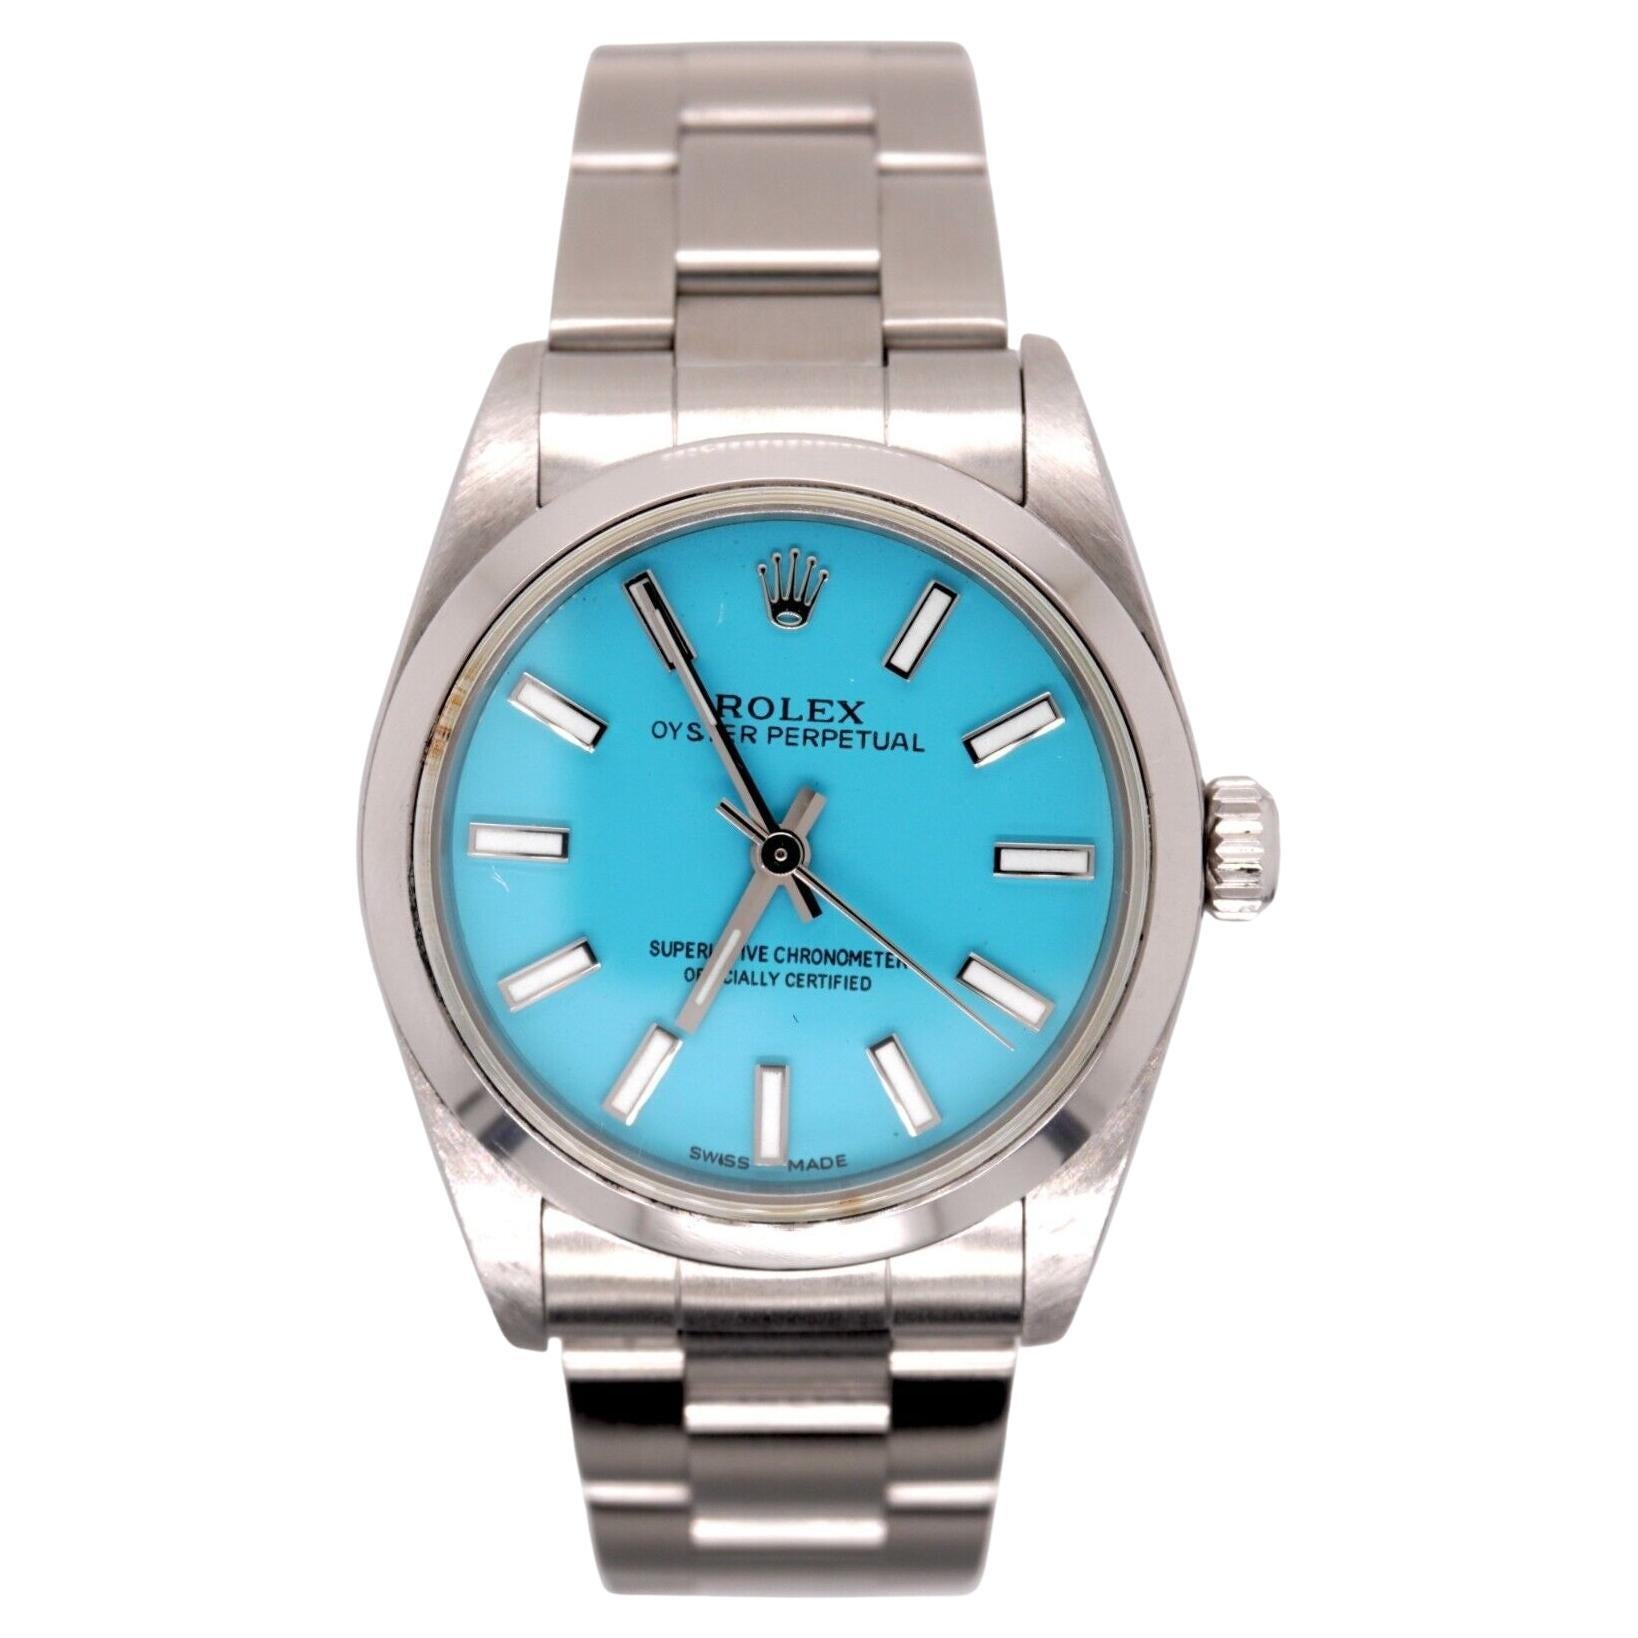 Reloj Rolex Oyster Perpetual 31mm Acero inoxidable Esfera Azul Tiffany Ref 77080 en venta